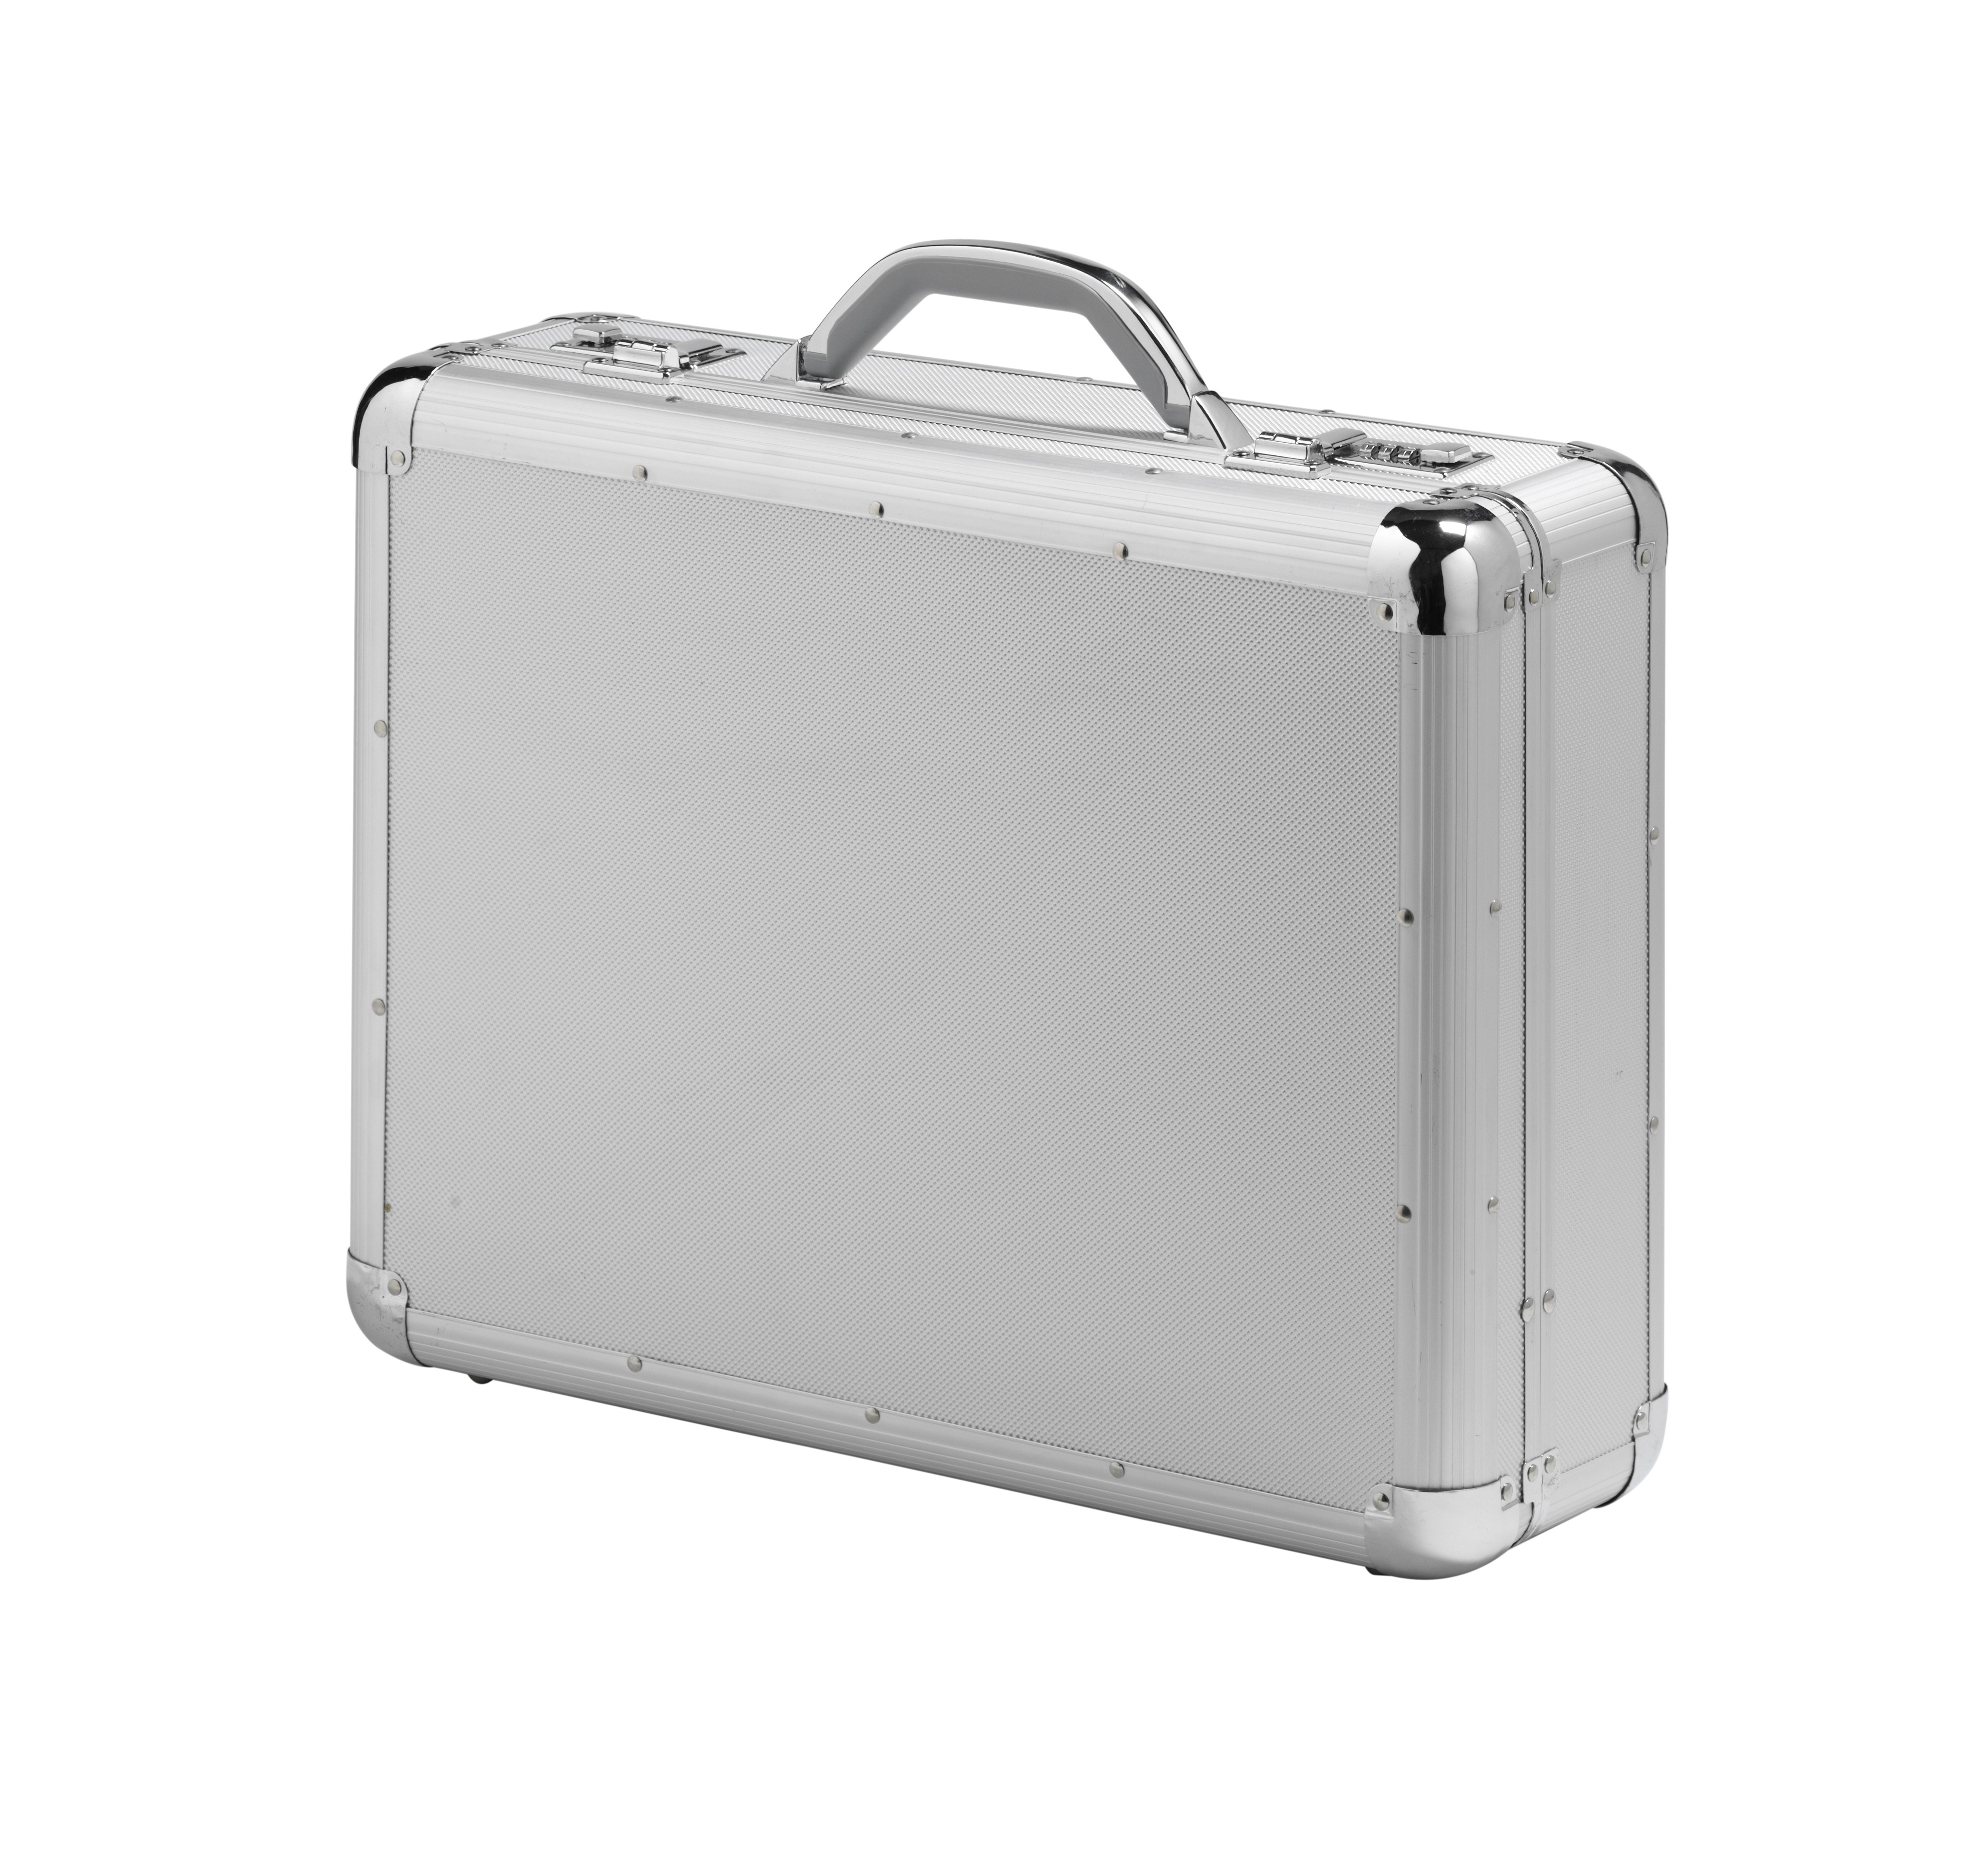 Falcon Aluminium & ABS Briefcase Marked #FI2992 Silver